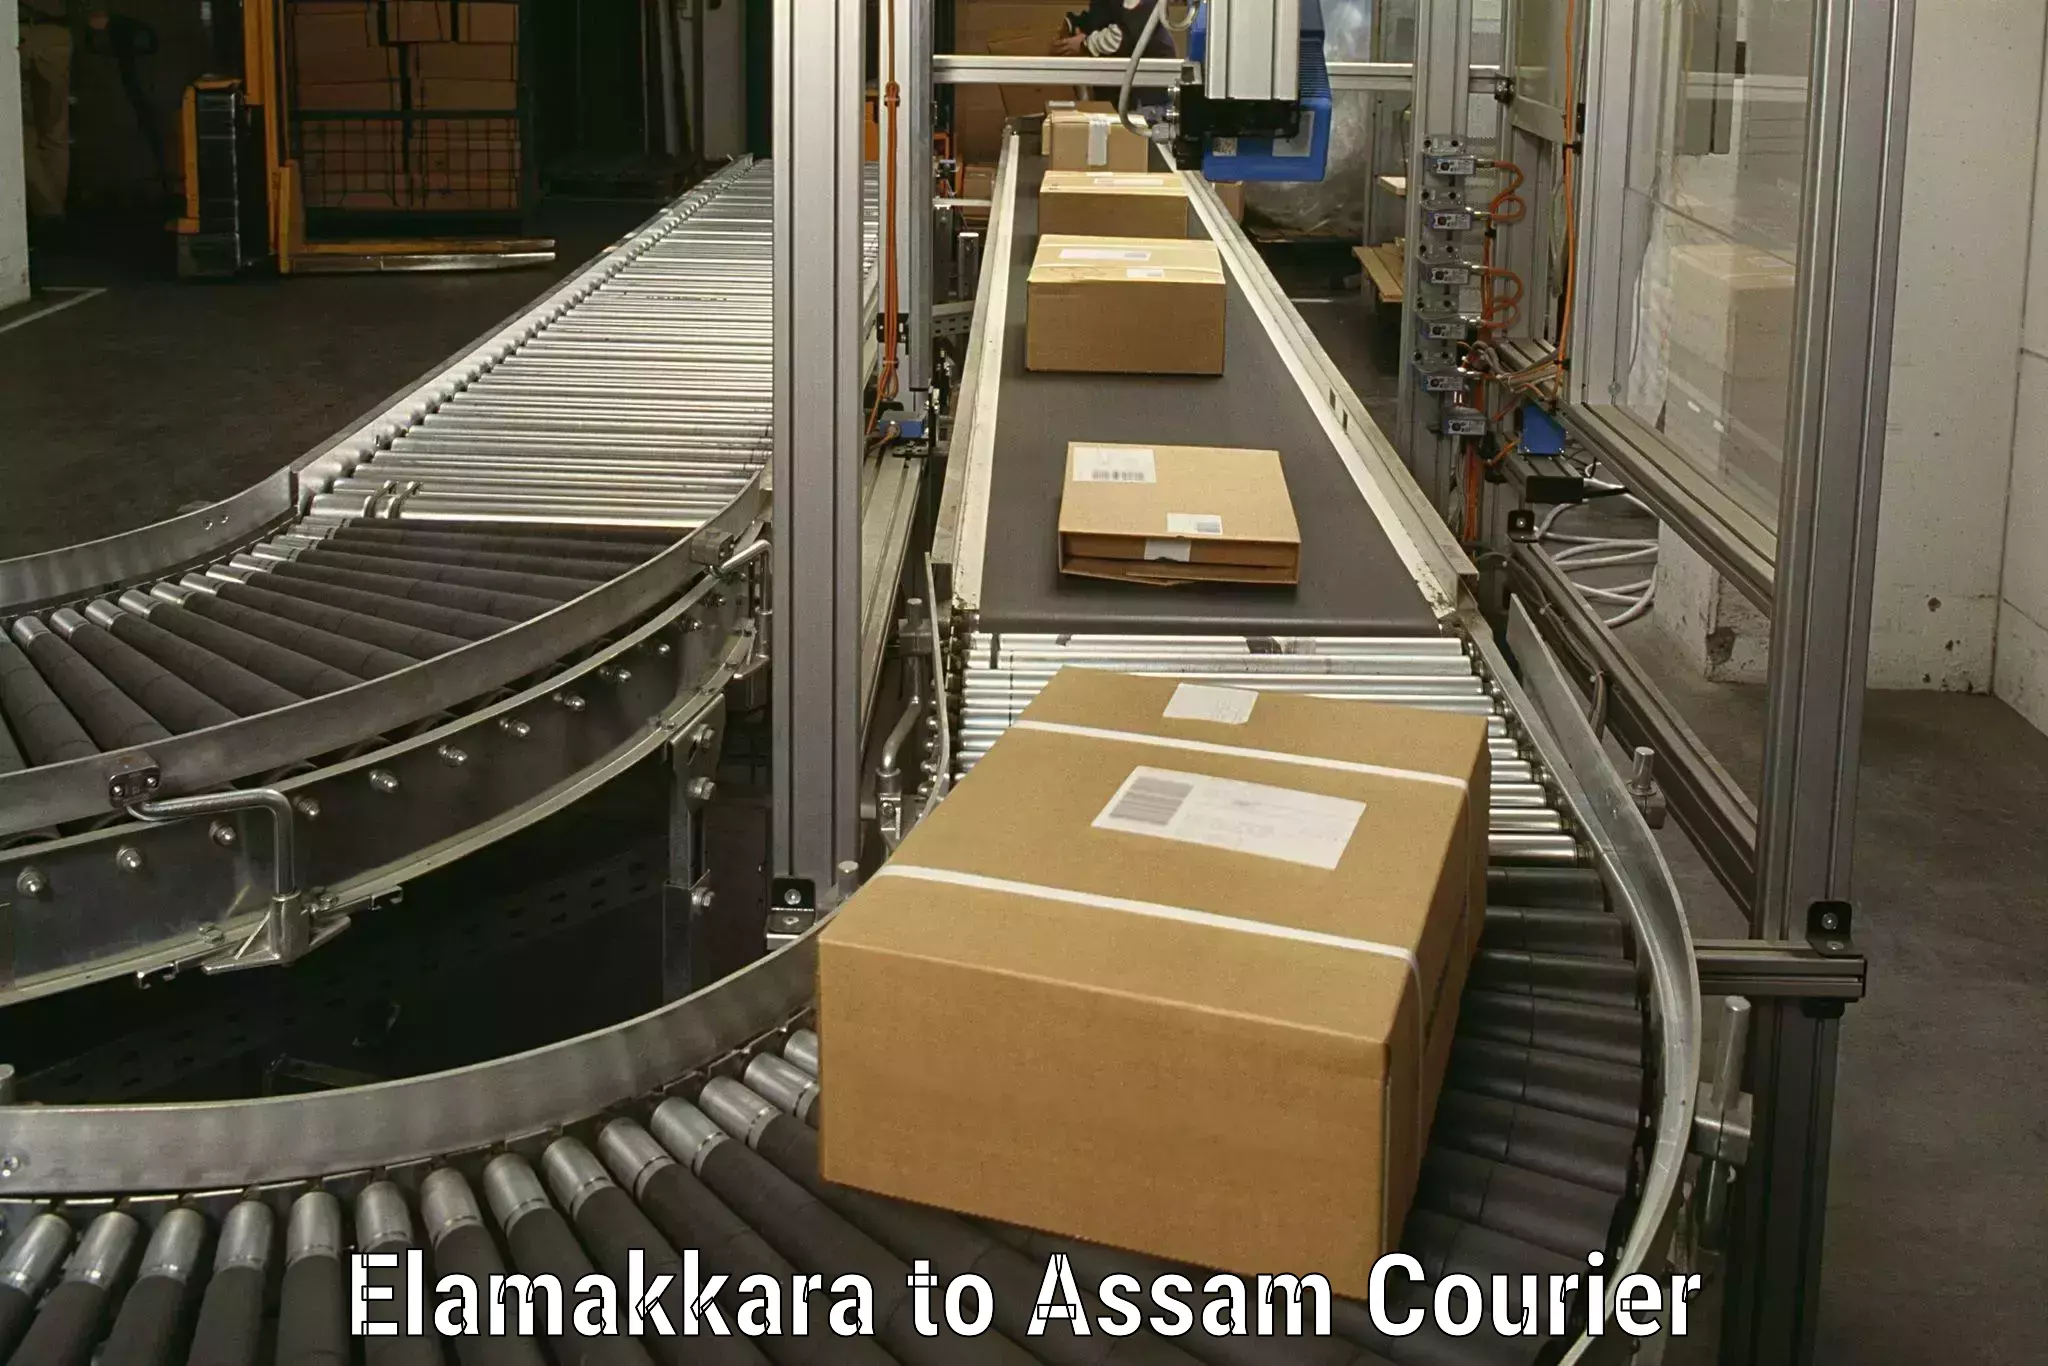 High-quality moving services Elamakkara to Moranhat